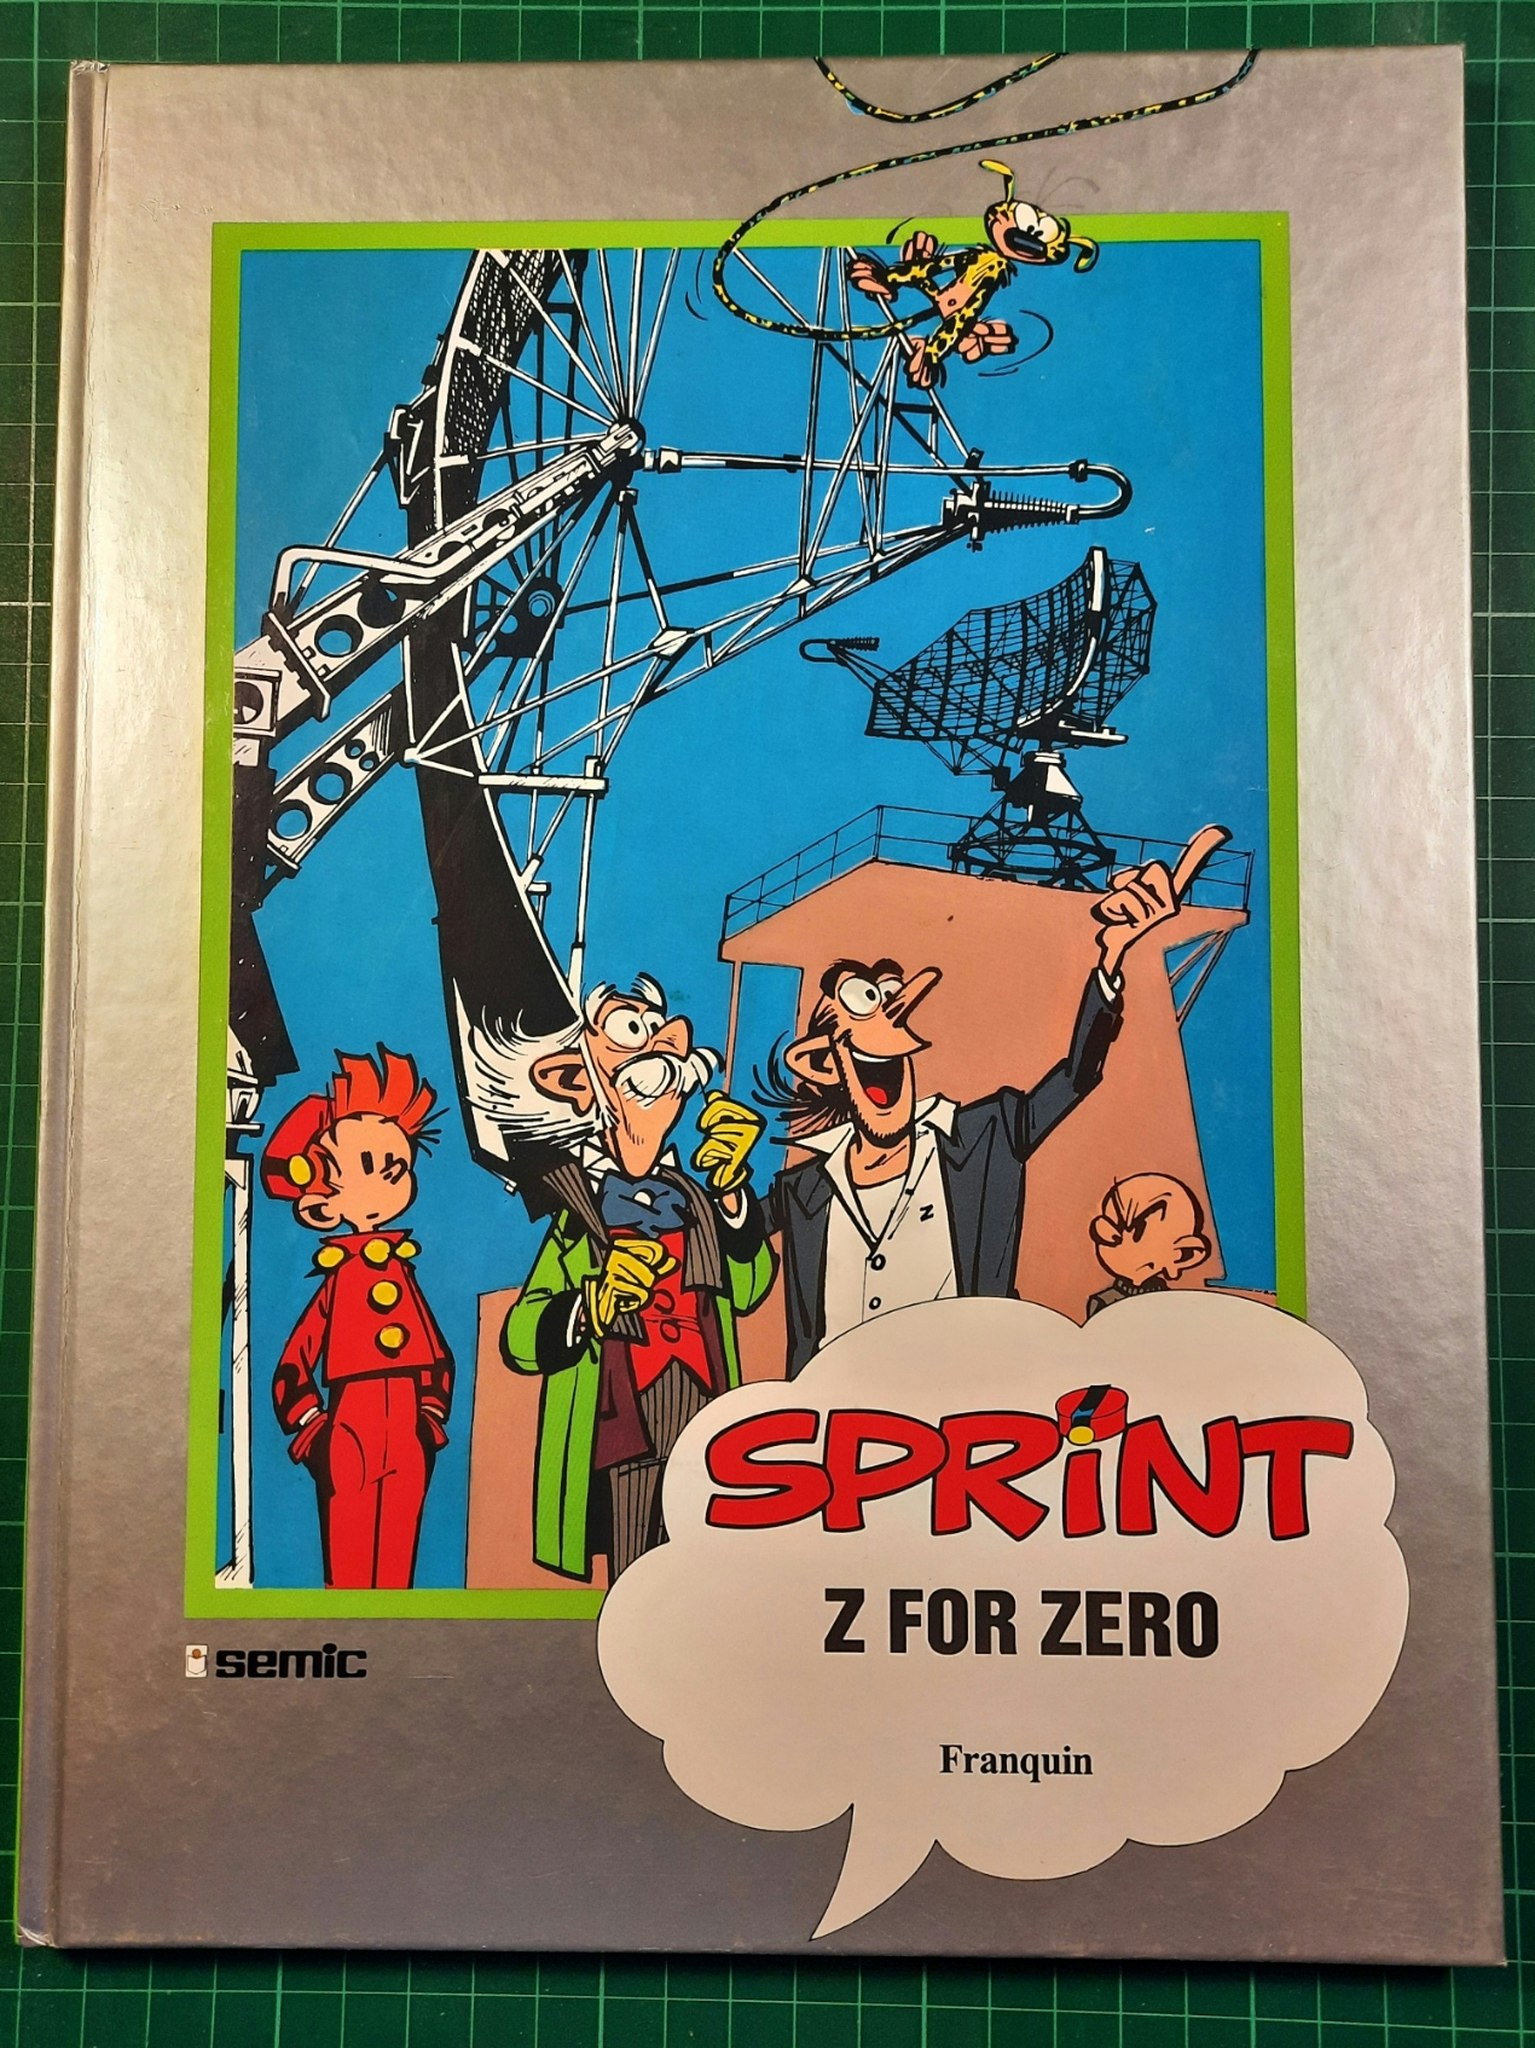 Sprint Z for Zero